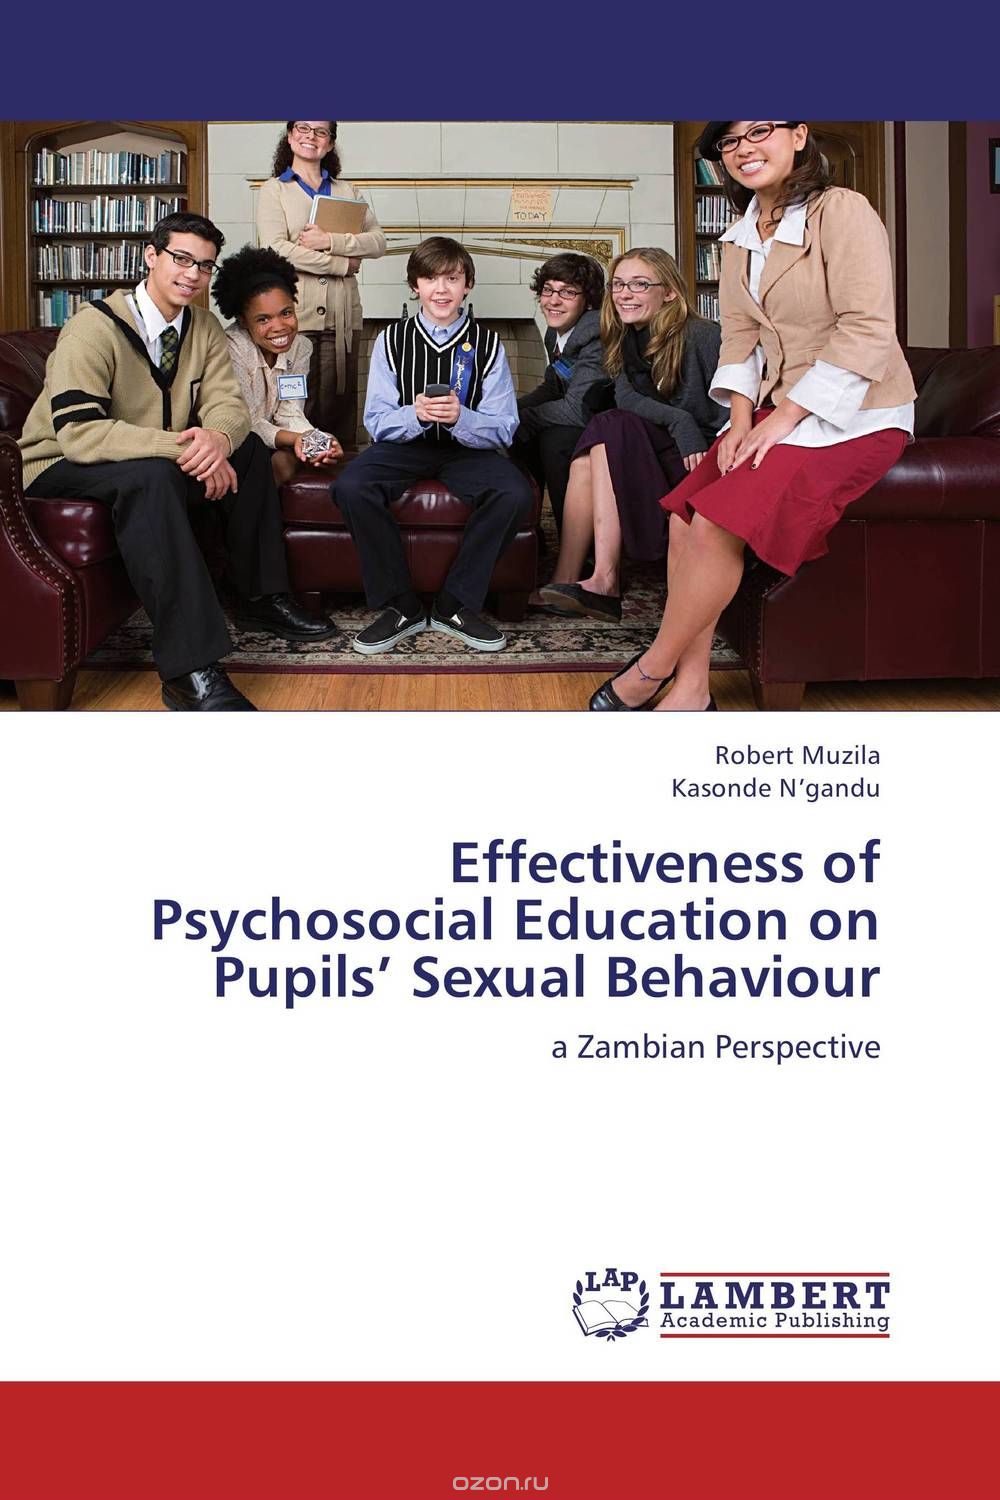 Скачать книгу "Effectiveness of Psychosocial Education on Pupils’ Sexual Behaviour"